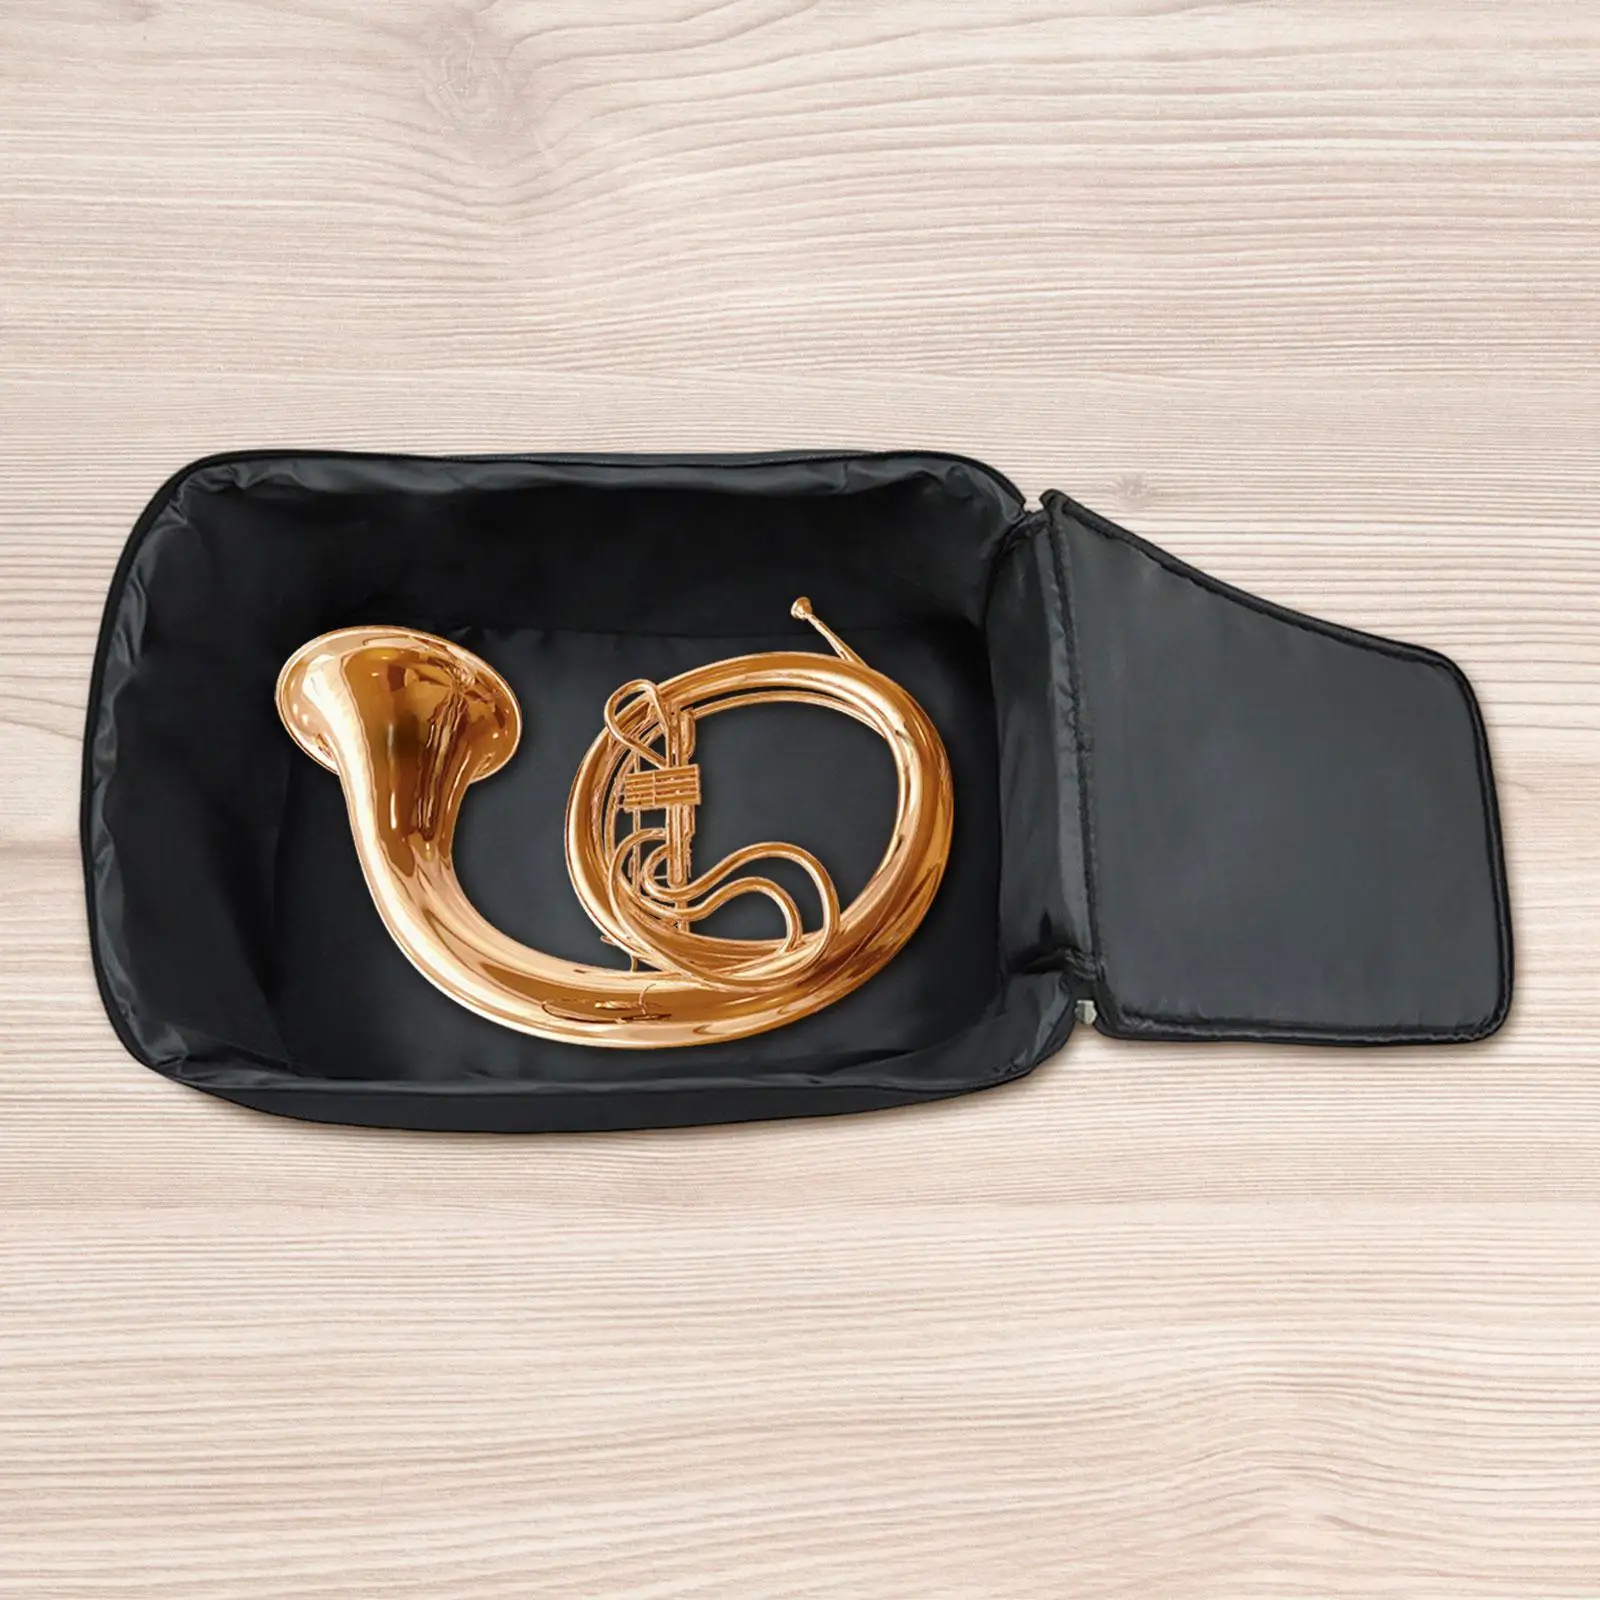 Clarinet Case Bag Padded Waterproof Adjustable Shoulder Strap Snare Drum Bag